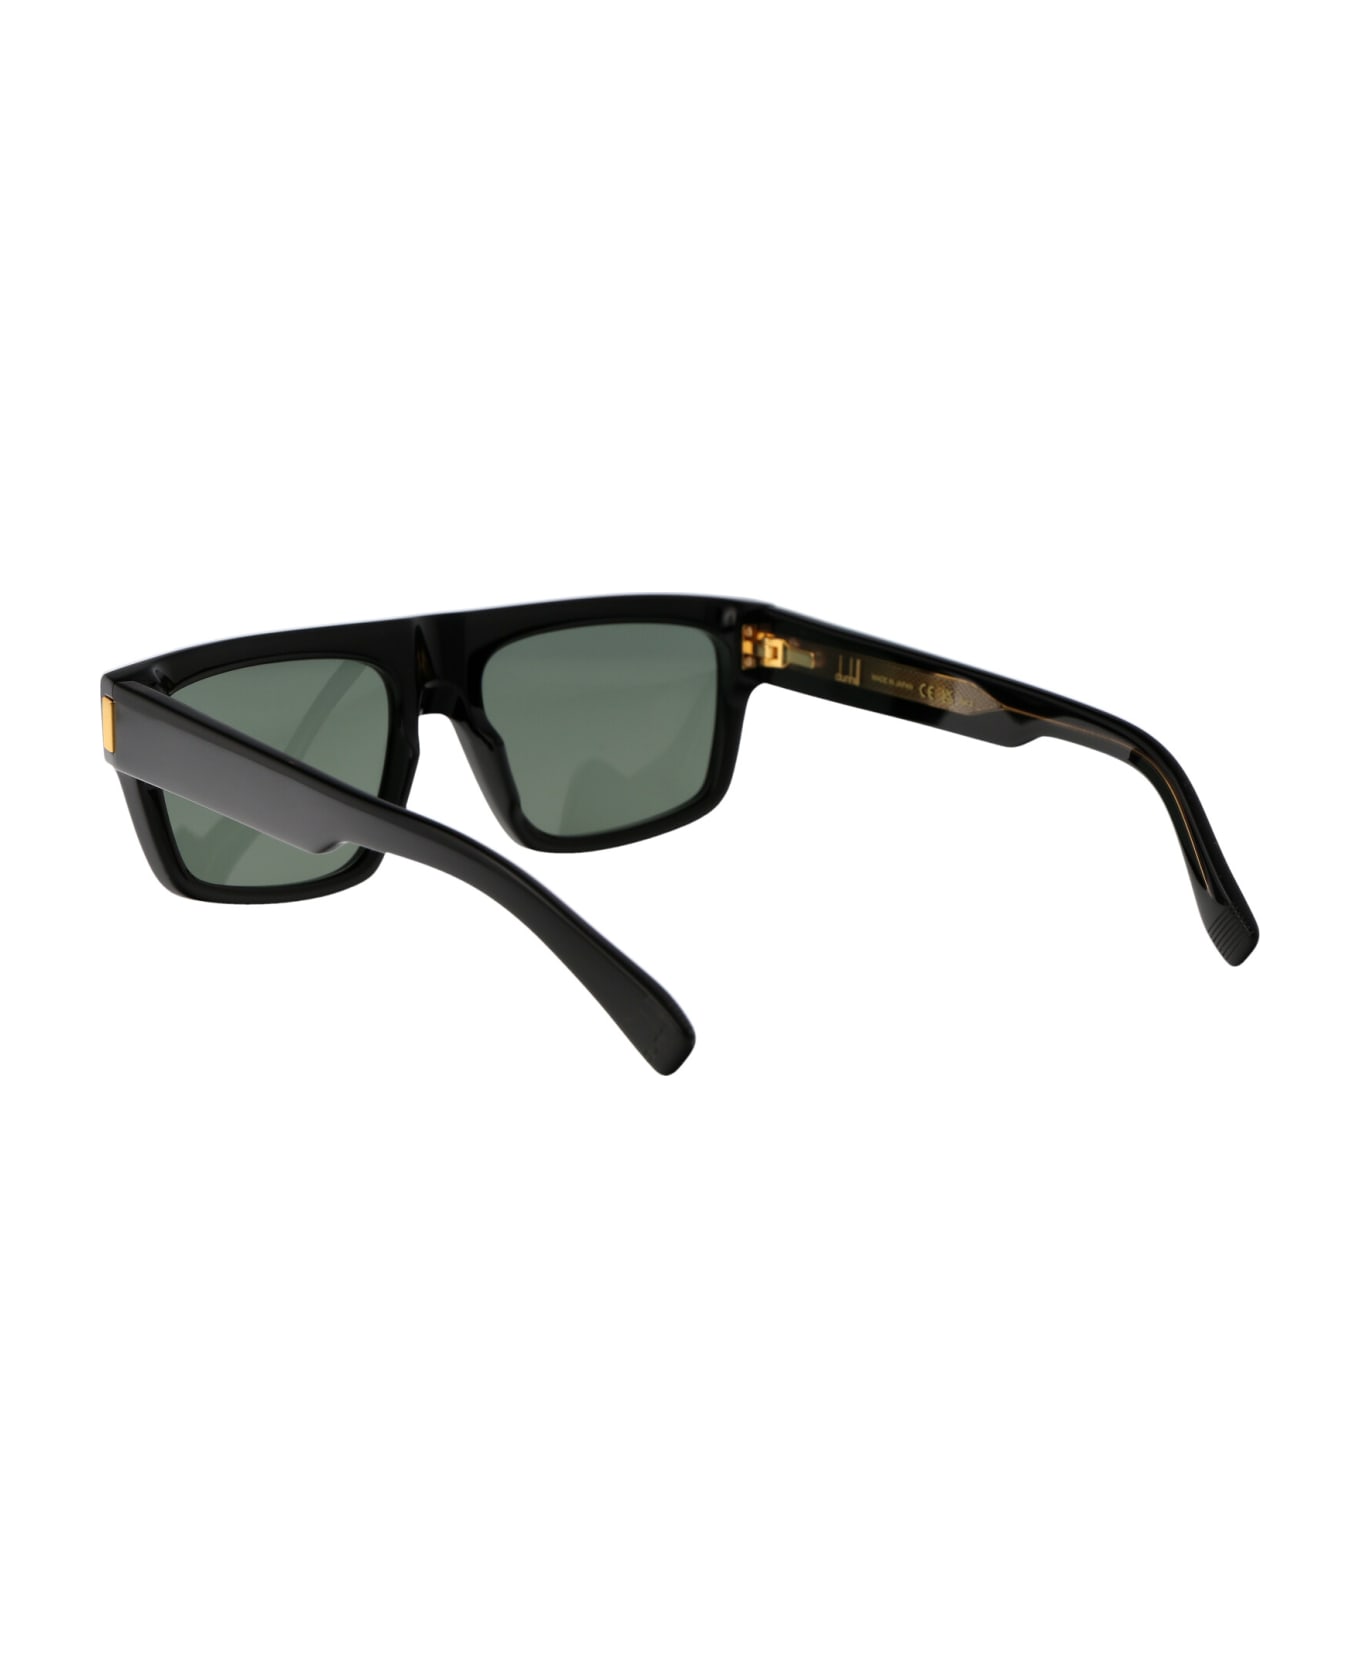 Dunhill Du0055s Sunglasses - 003 BLACK BLACK GREEN サングラス